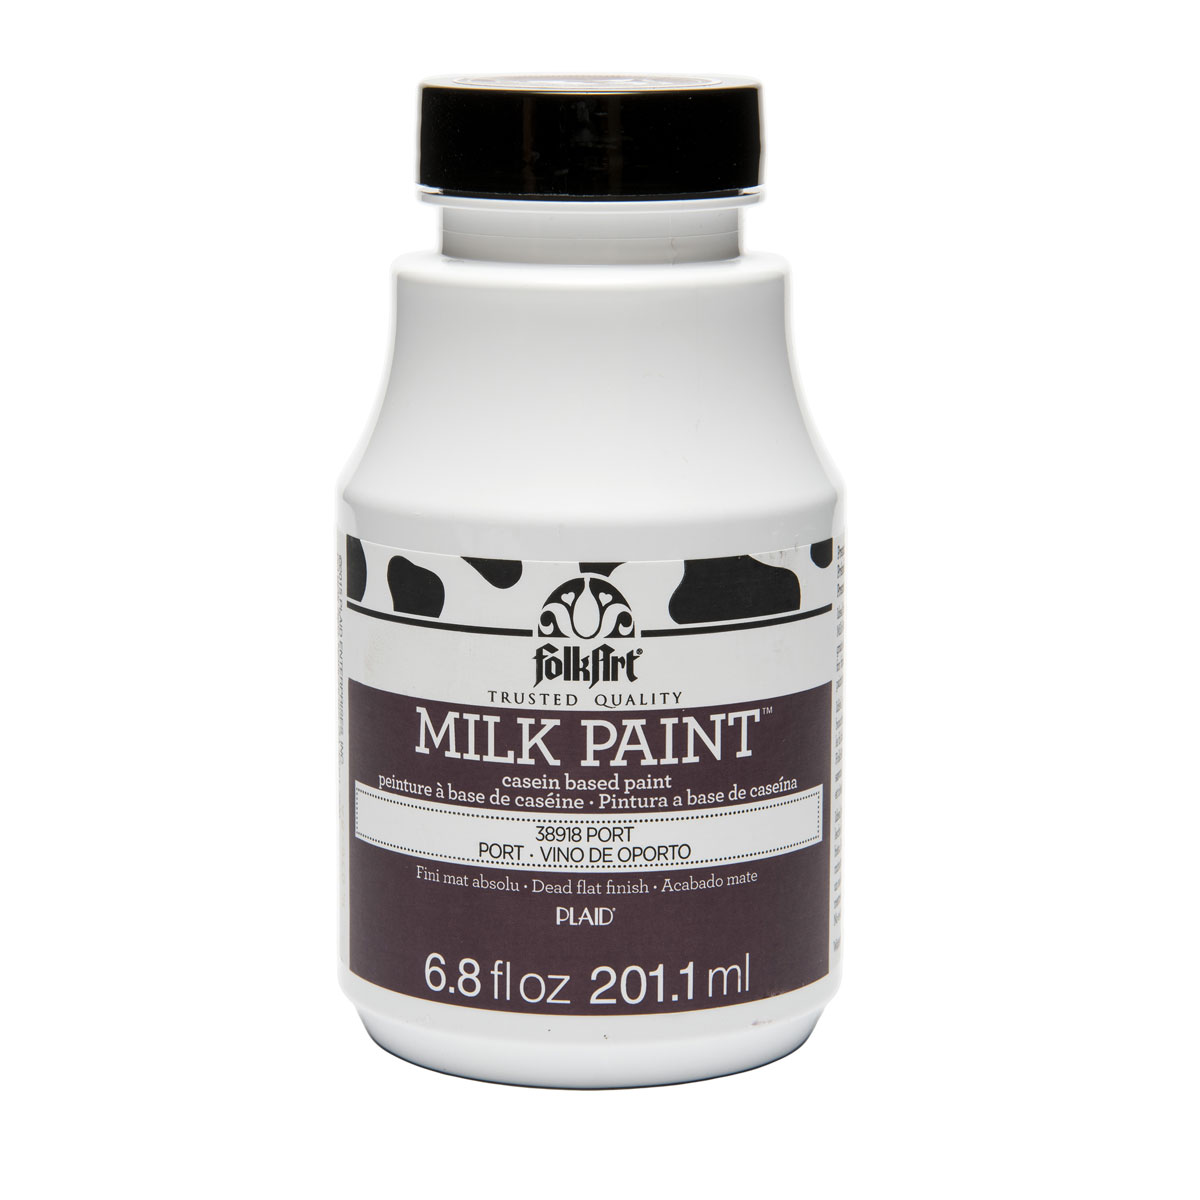 FolkArt ® Milk Paint™ - Port, 6.8 oz. - 38918